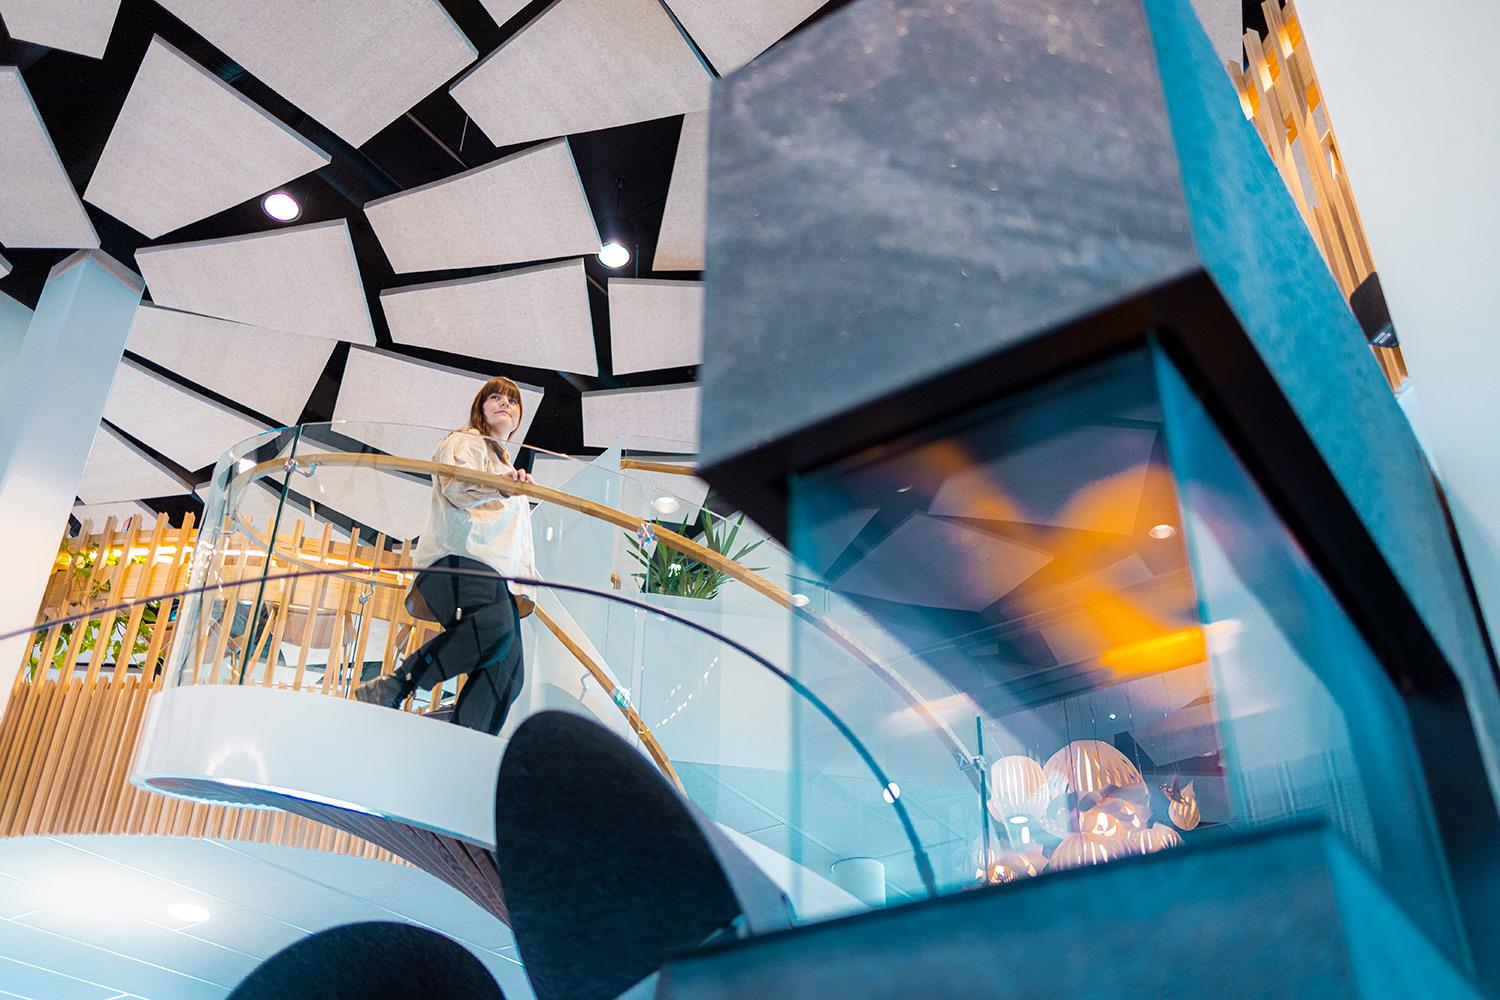 Savilahden uusi ja moderni CoWork-tila, jossa nainen laskeutuu kaarevia portaita alakertaan. Paljon lasia, puuta ja valoja.